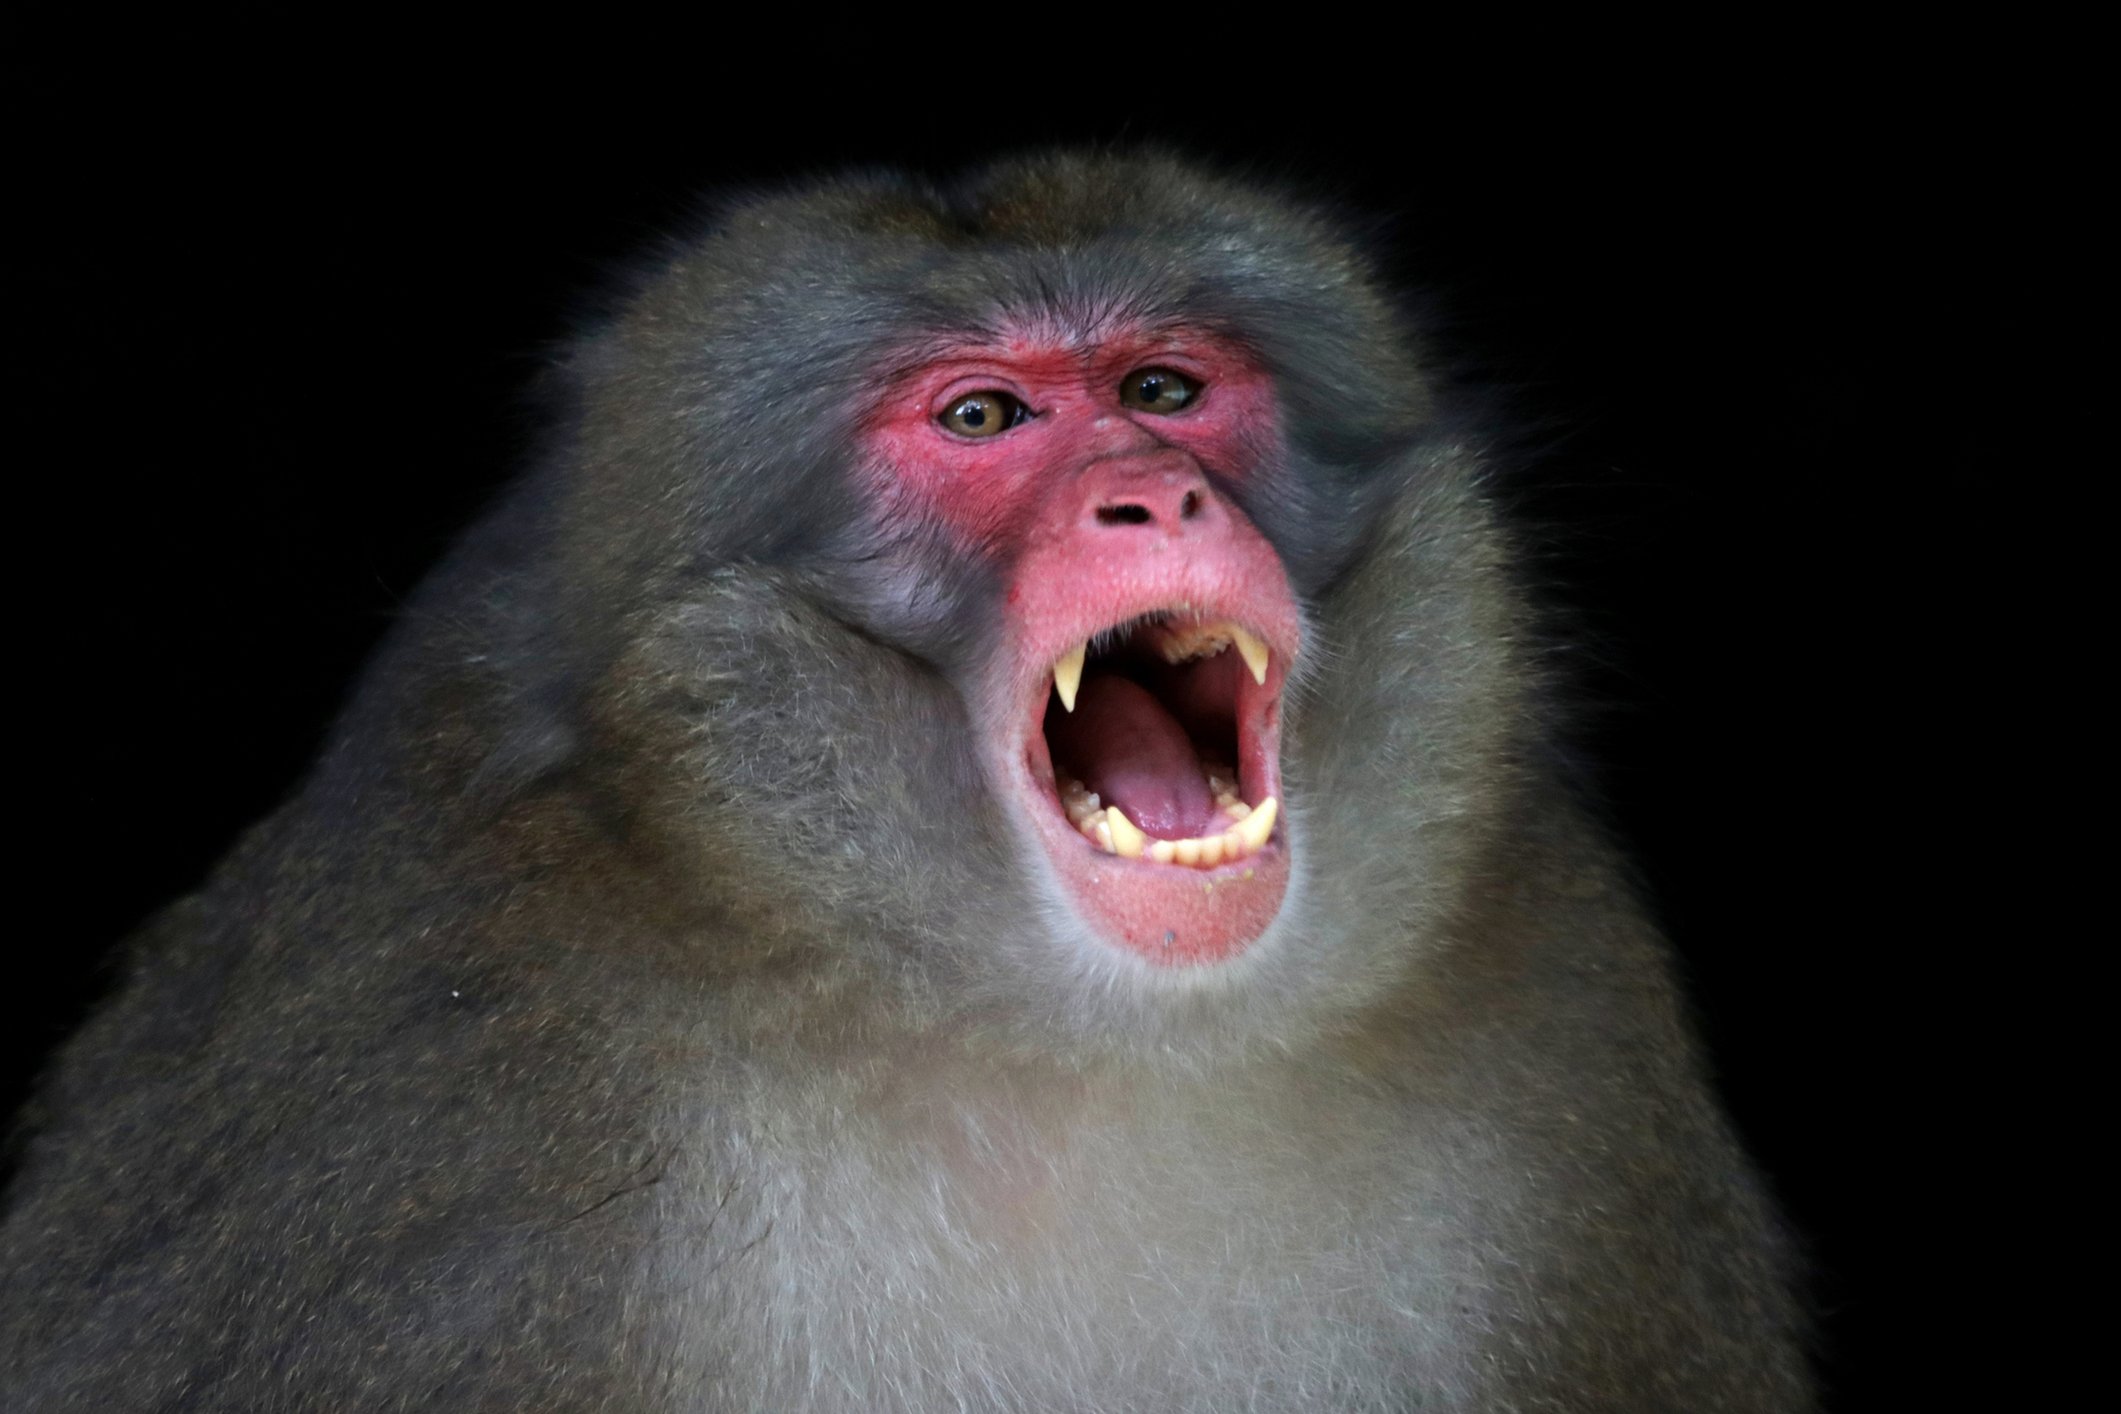 Monyet Jepang dalam situasi agresif